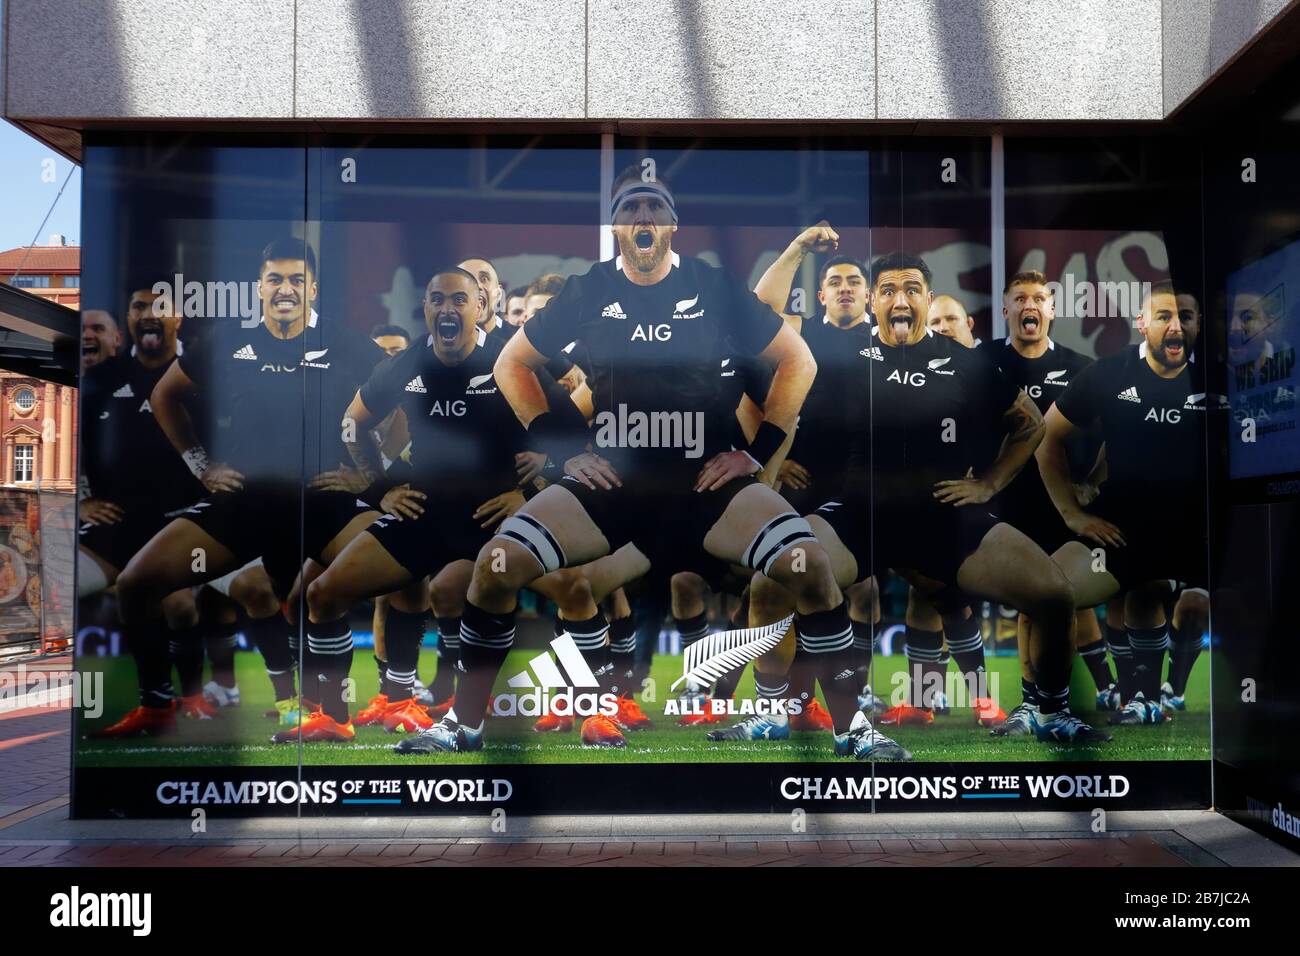 Neuseeländische Rugby-Nationalmannschaft Alle Schwarzen beim traditionellen Haka. Plakat in Auckland, Neuseeland während der Rugby-Weltmeisterschaft 2019 Stockfoto